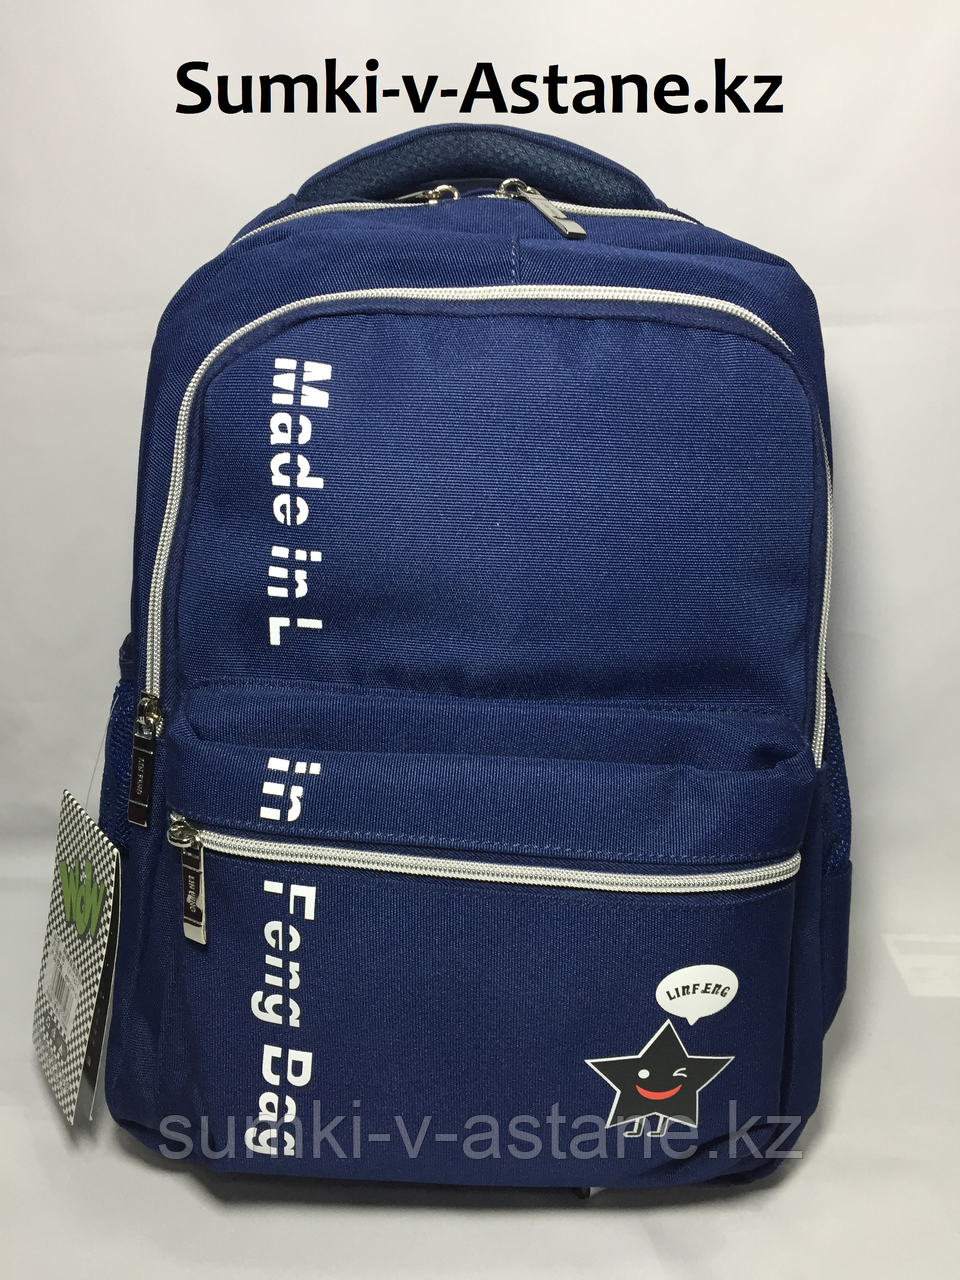 Школьный рюкзак для девочек, 3-5-й класс (высота 44 см, ширина 29 см, глубина 15 см)